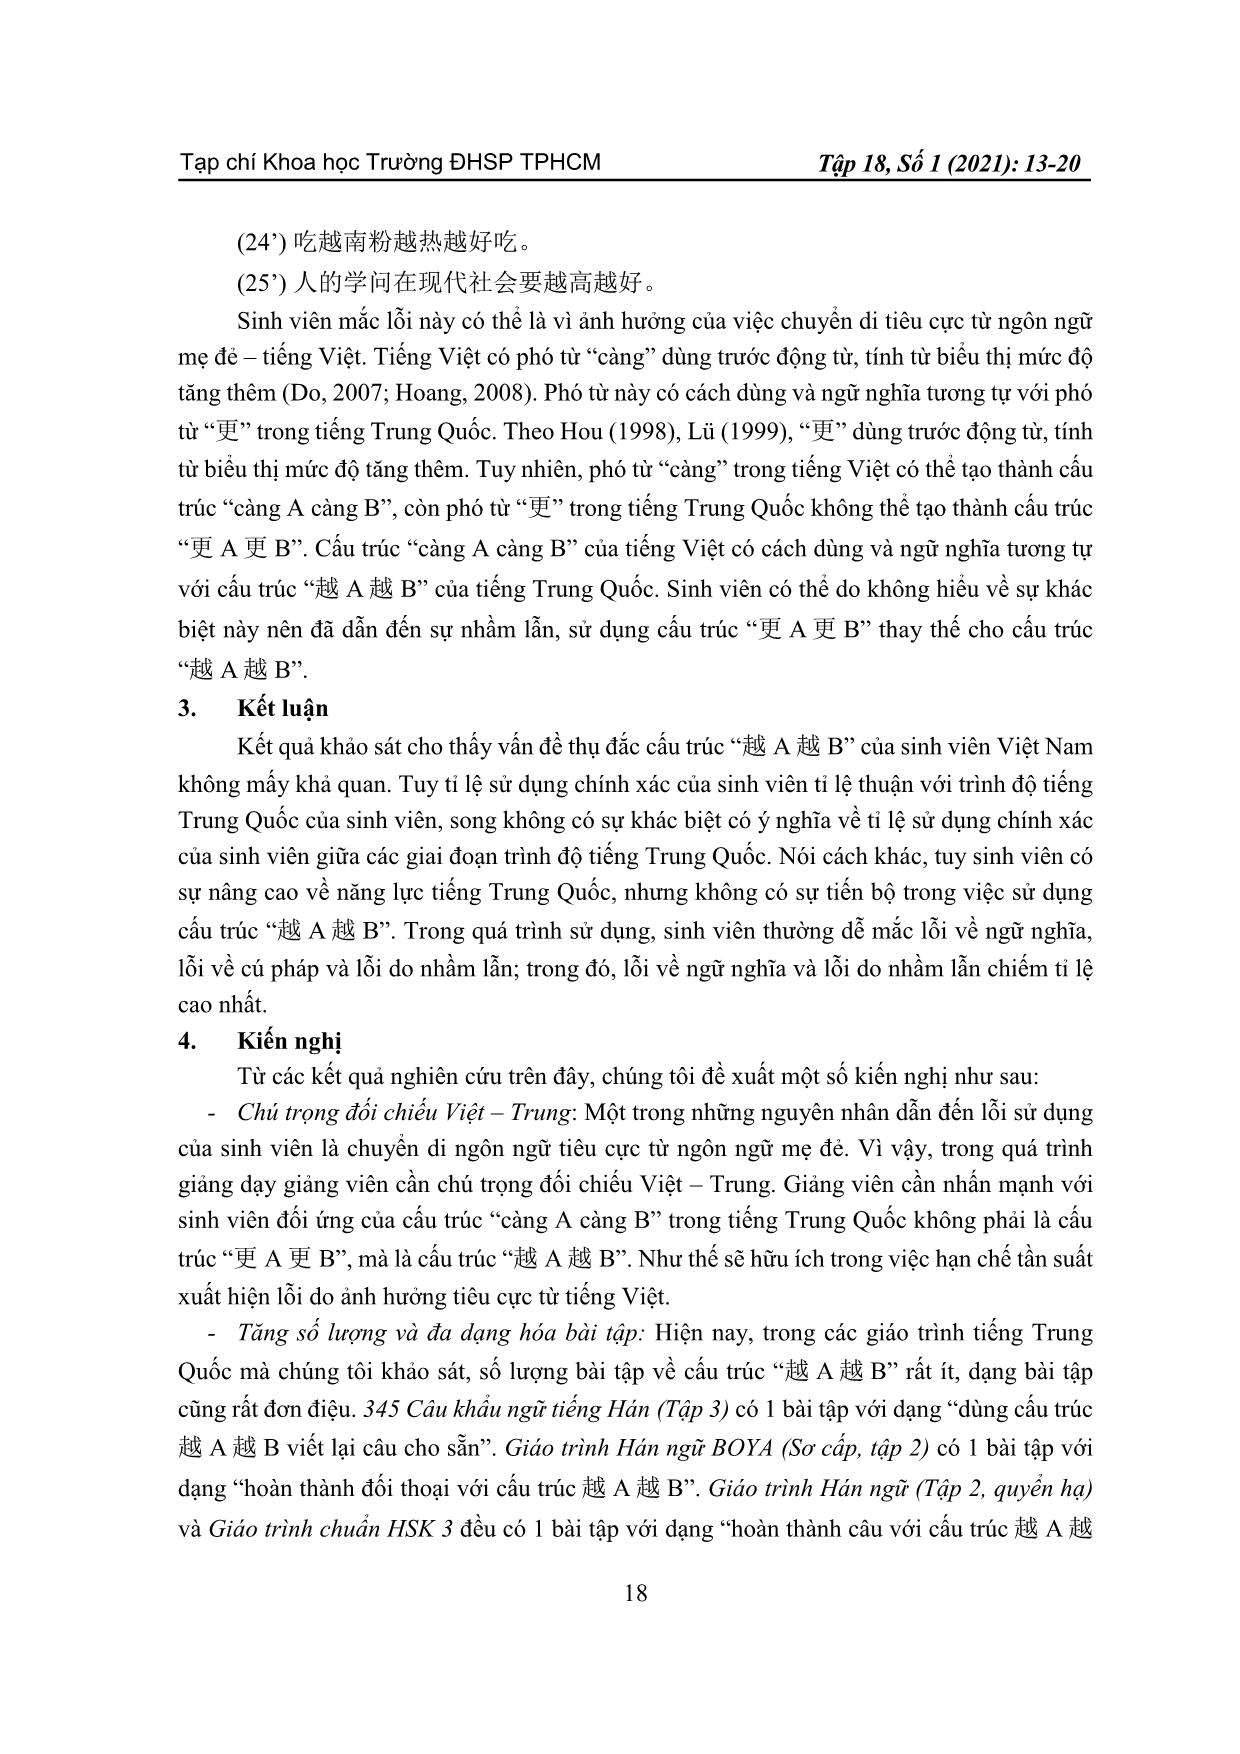 Phân tích lỗi sử dụng cấu trúc “yue A yue B” (越 A 越 B) của sinh viên Việt Nam trang 6